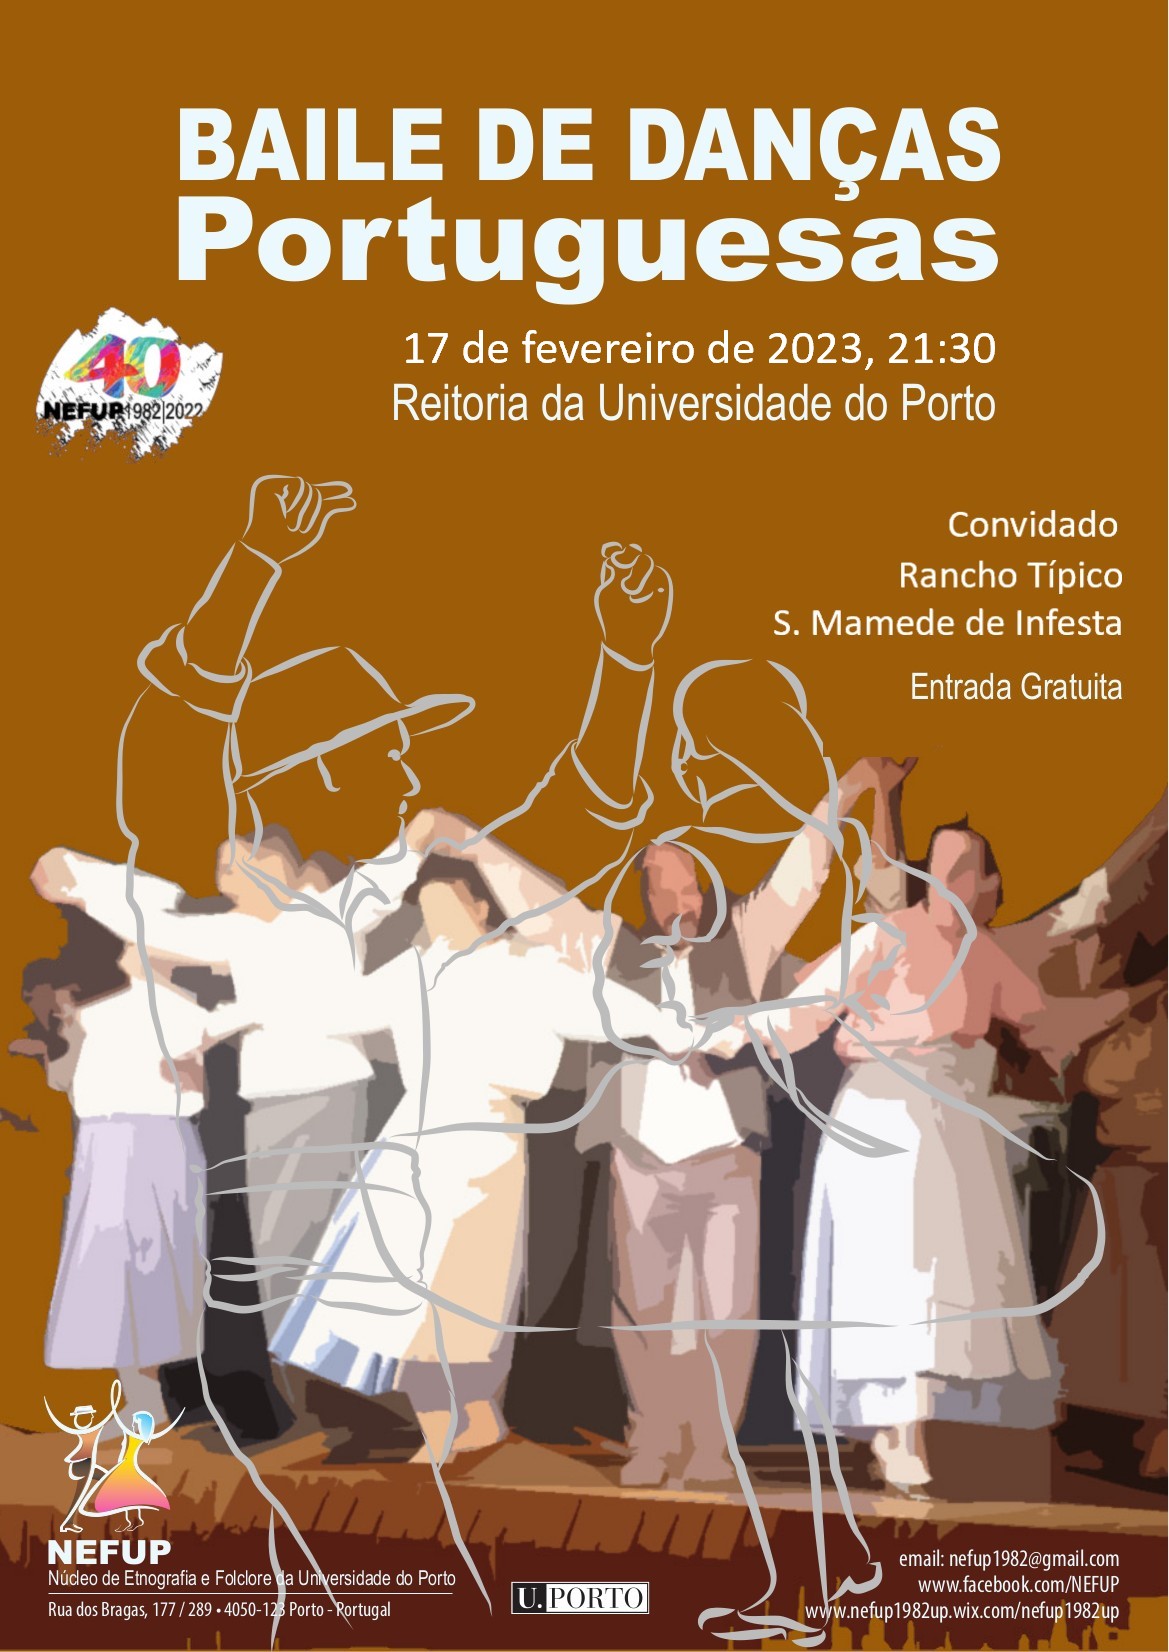 Baile de Entrudo de danças tradicionais portuguesas